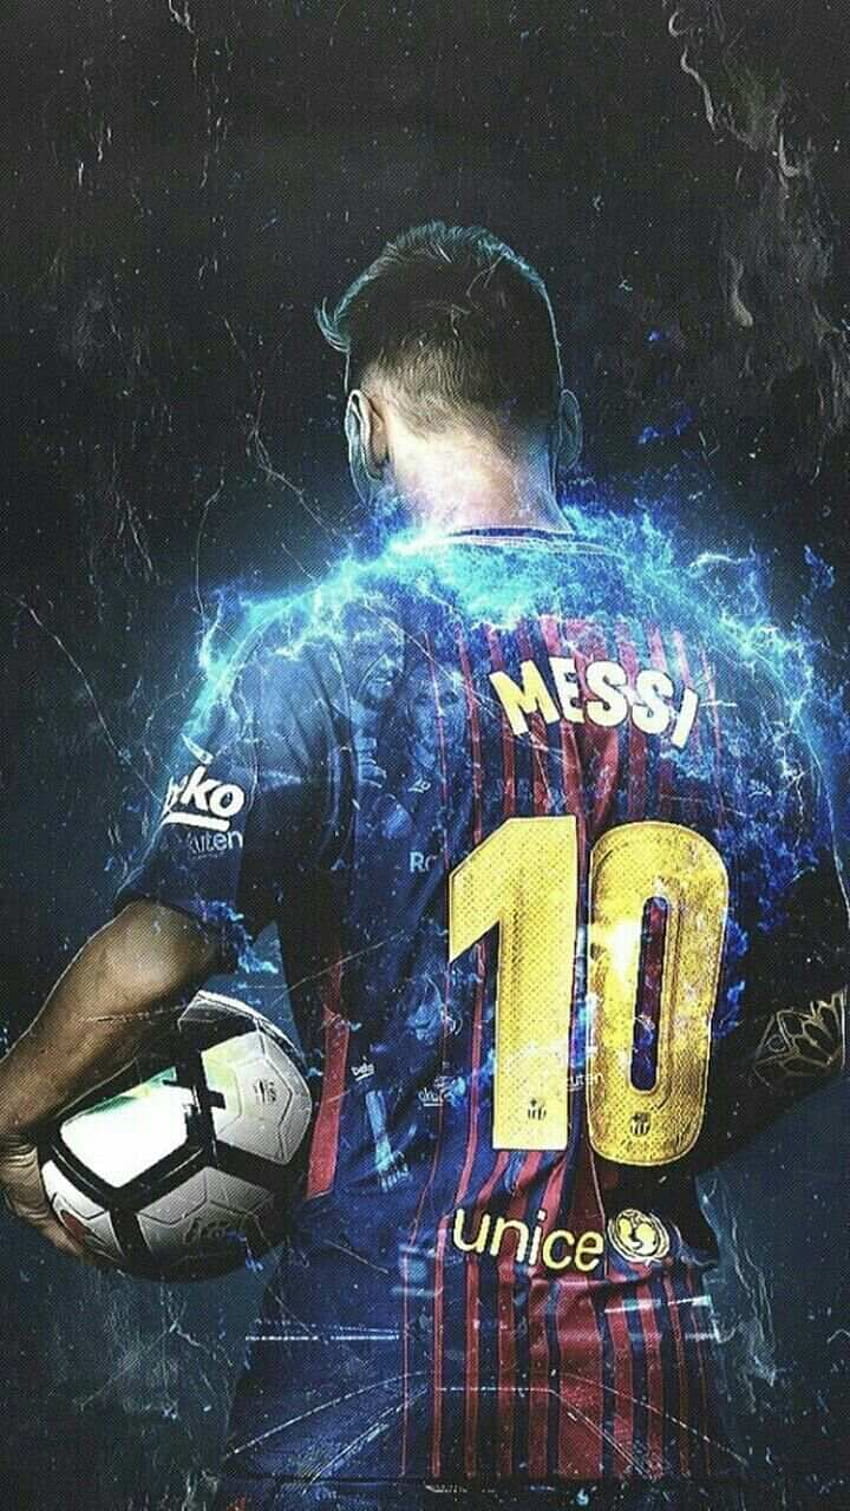 Áo đấu của Messi với màu xanh đỏ đặc trưng của Barcelona cùng với tên và số đẹp mắt sẽ giúp bạn trở thành fan số một của siêu sao bóng đá này. Hãy cất giữ món đồ đặc biệt này để cổ vũ cho Messi mỗi khi anh ít quá.